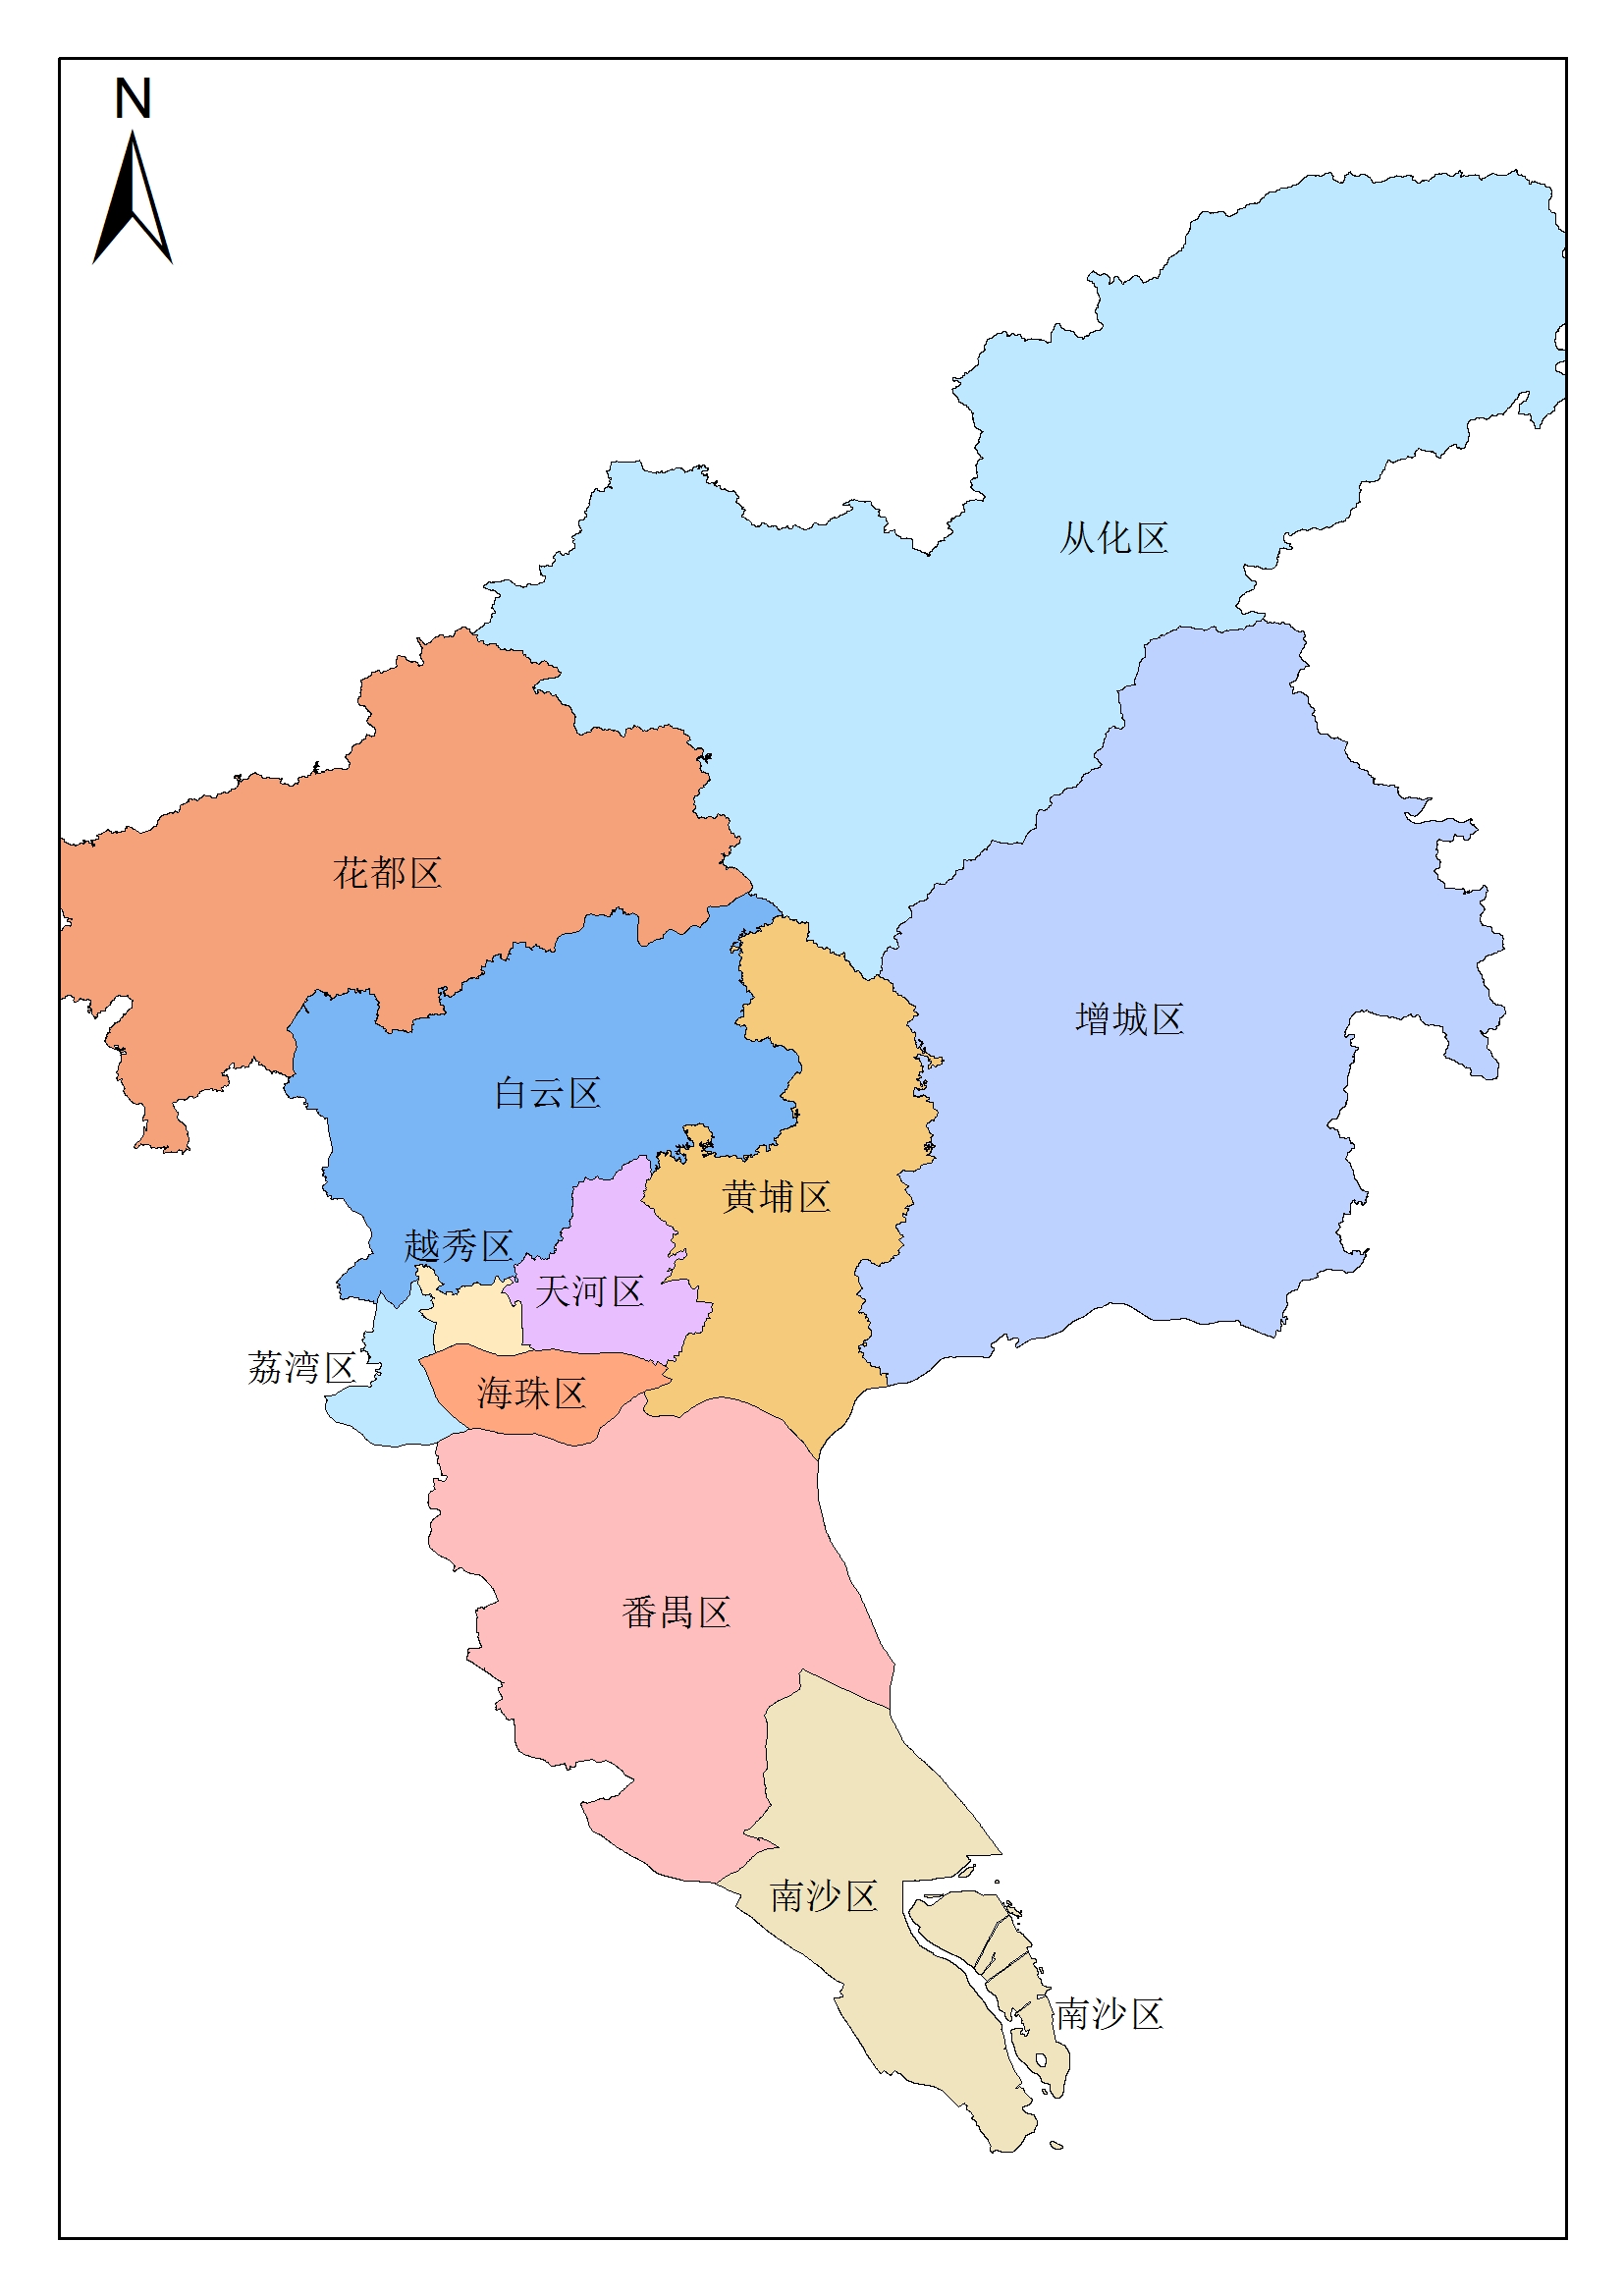 广州地图_广州市主城区地图_广州地图库